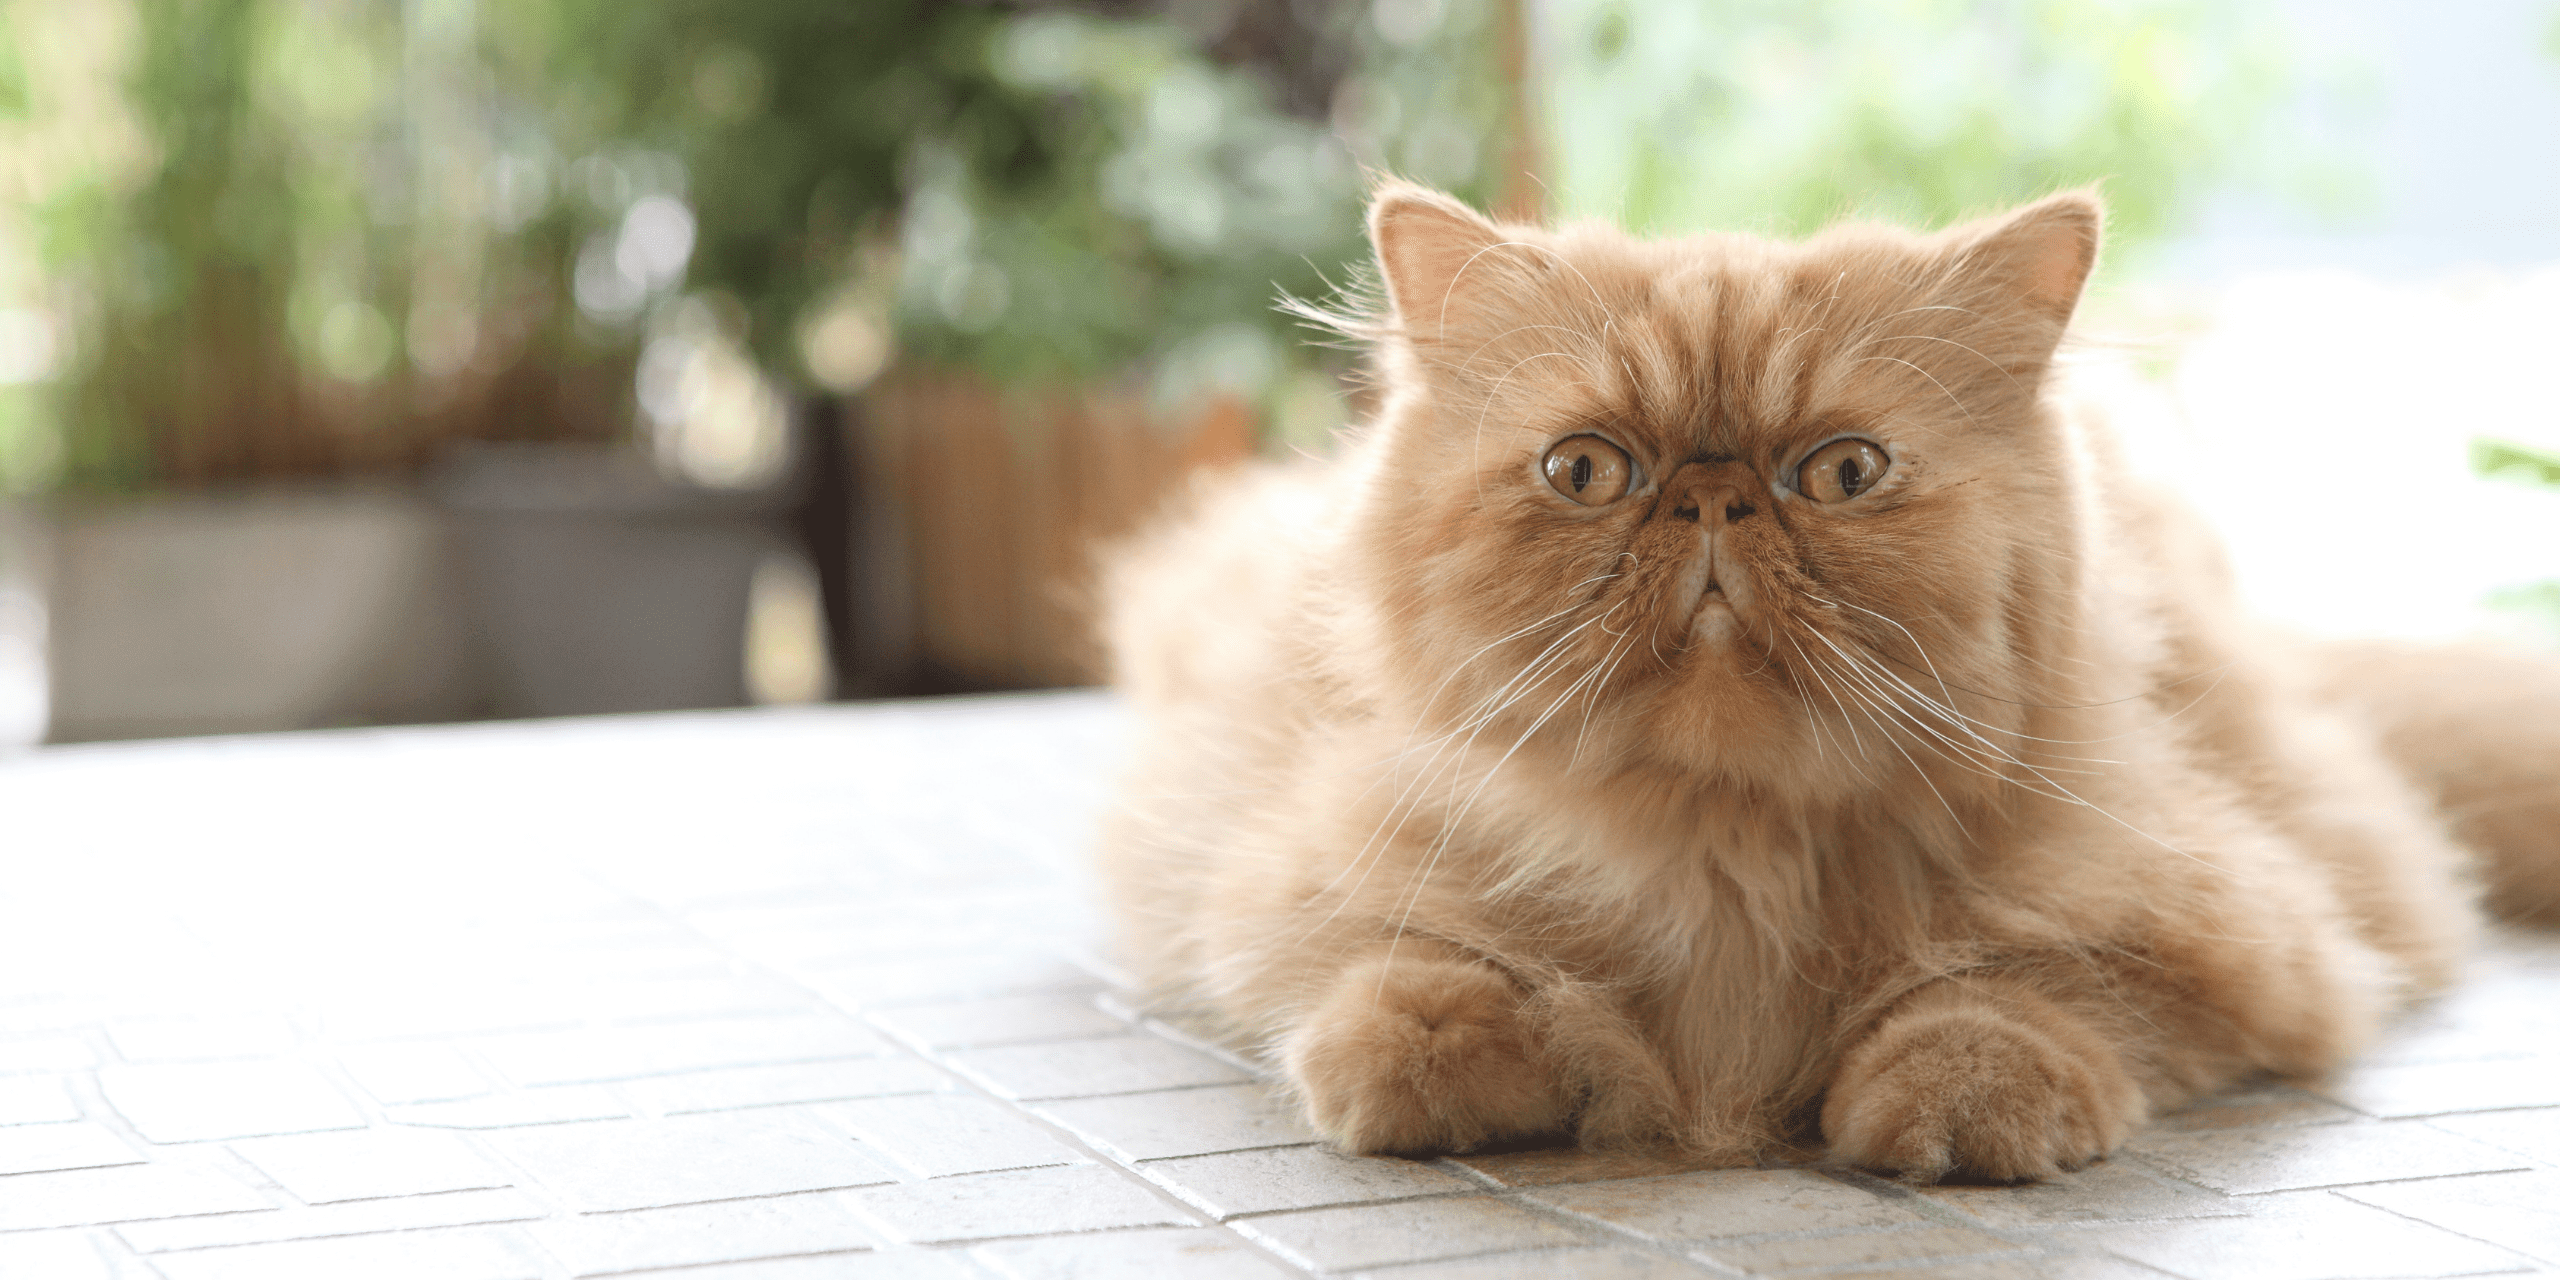 personalidad del gato persa